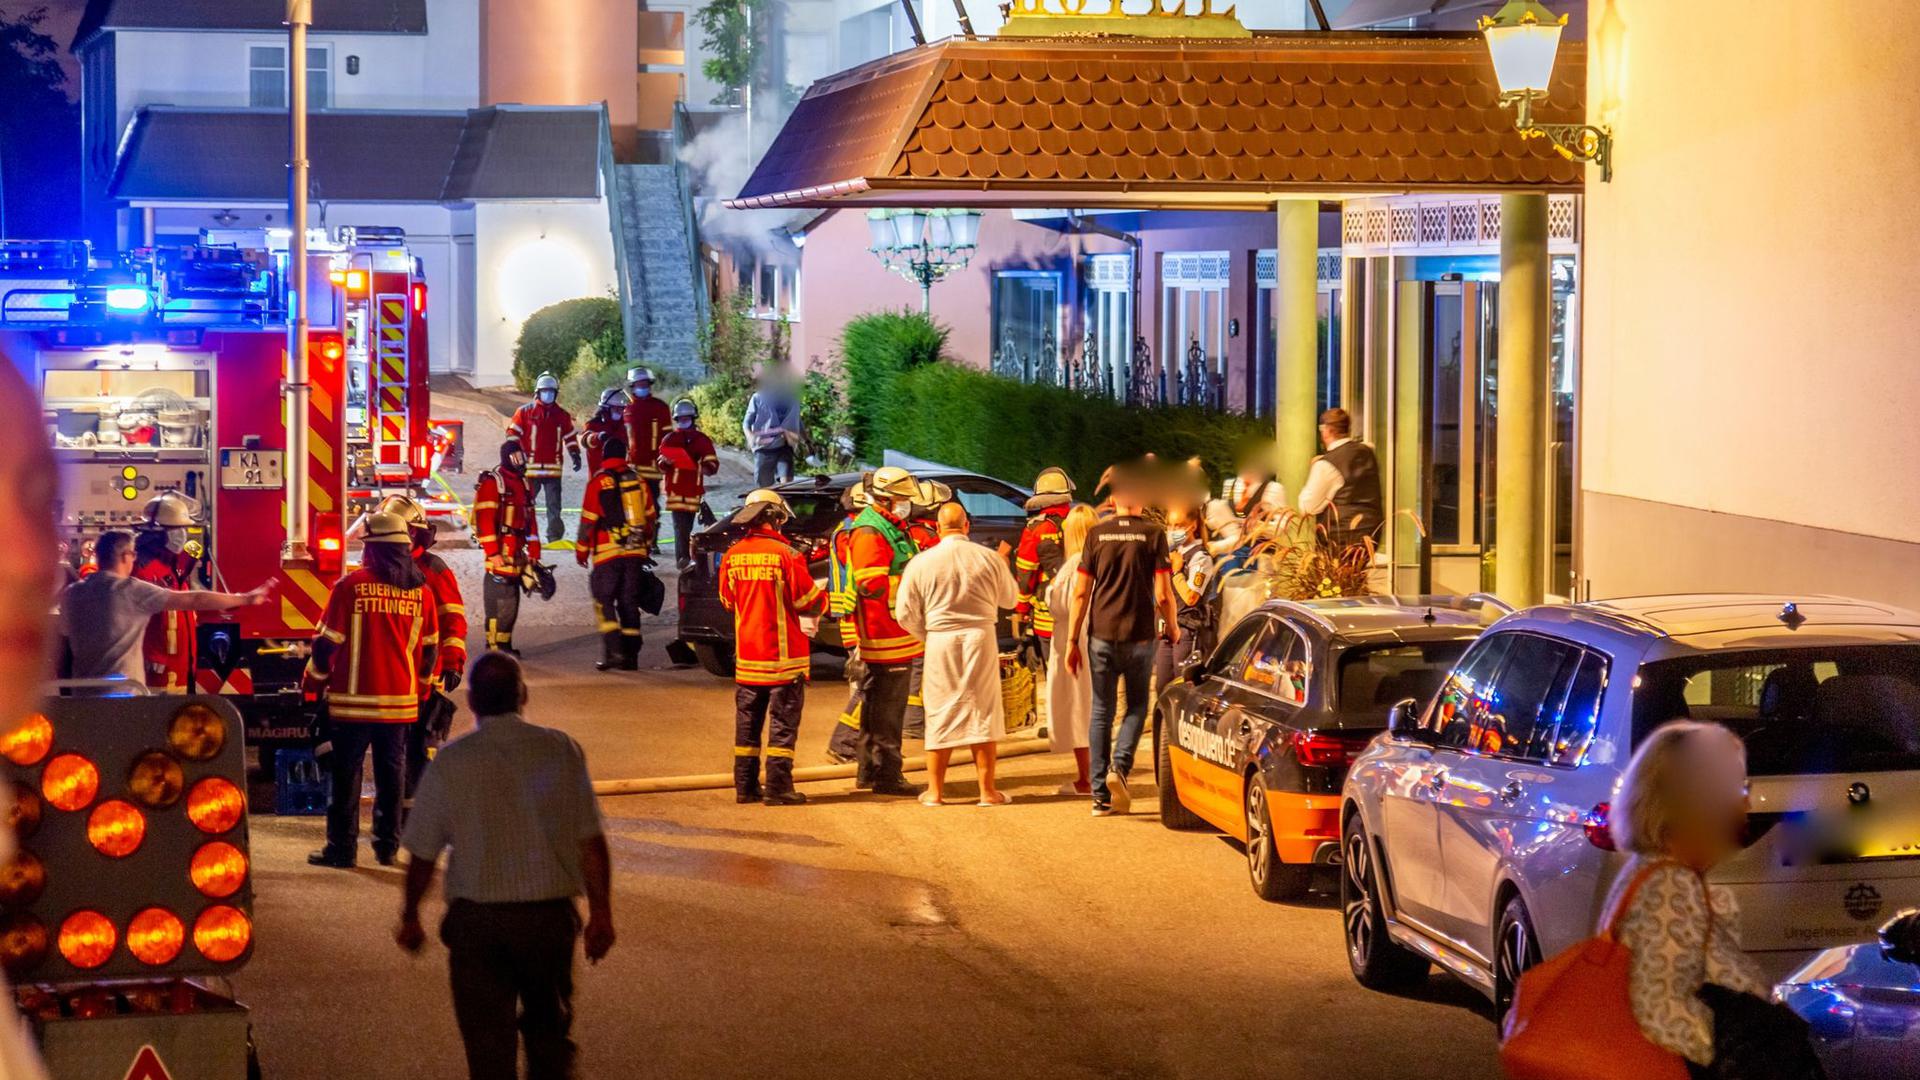 Feuerwehrleute und Hotelgäste stehen vor dem Eingang des Hotels in Ettlingen.